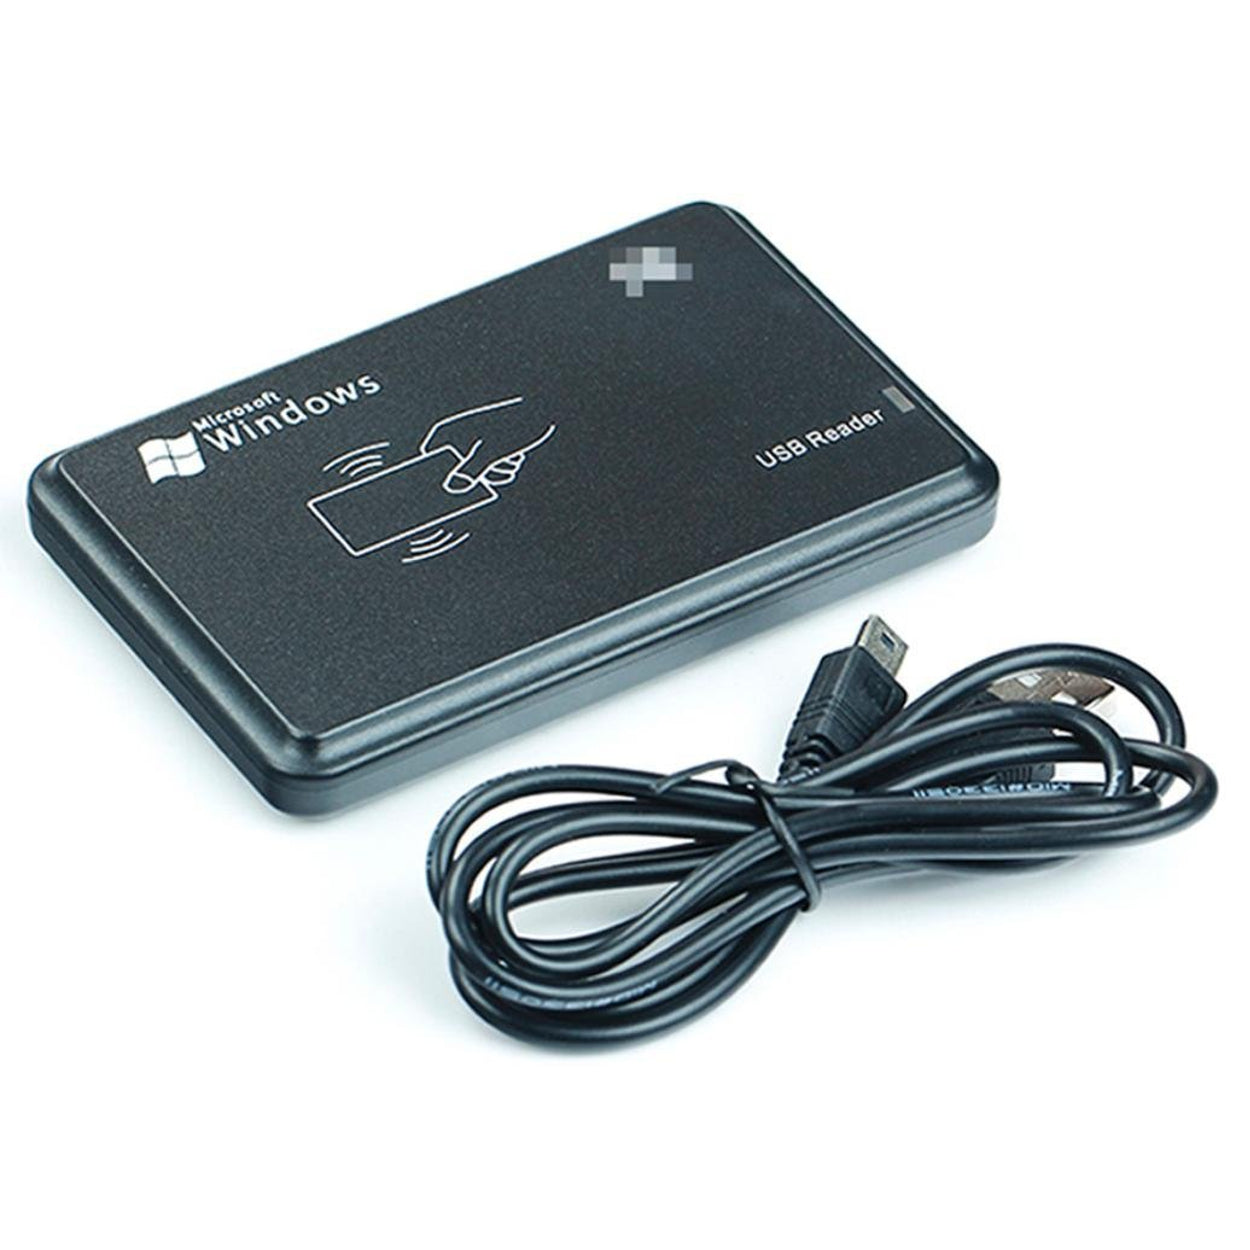 USB 125 KHZ RFID Card Reader